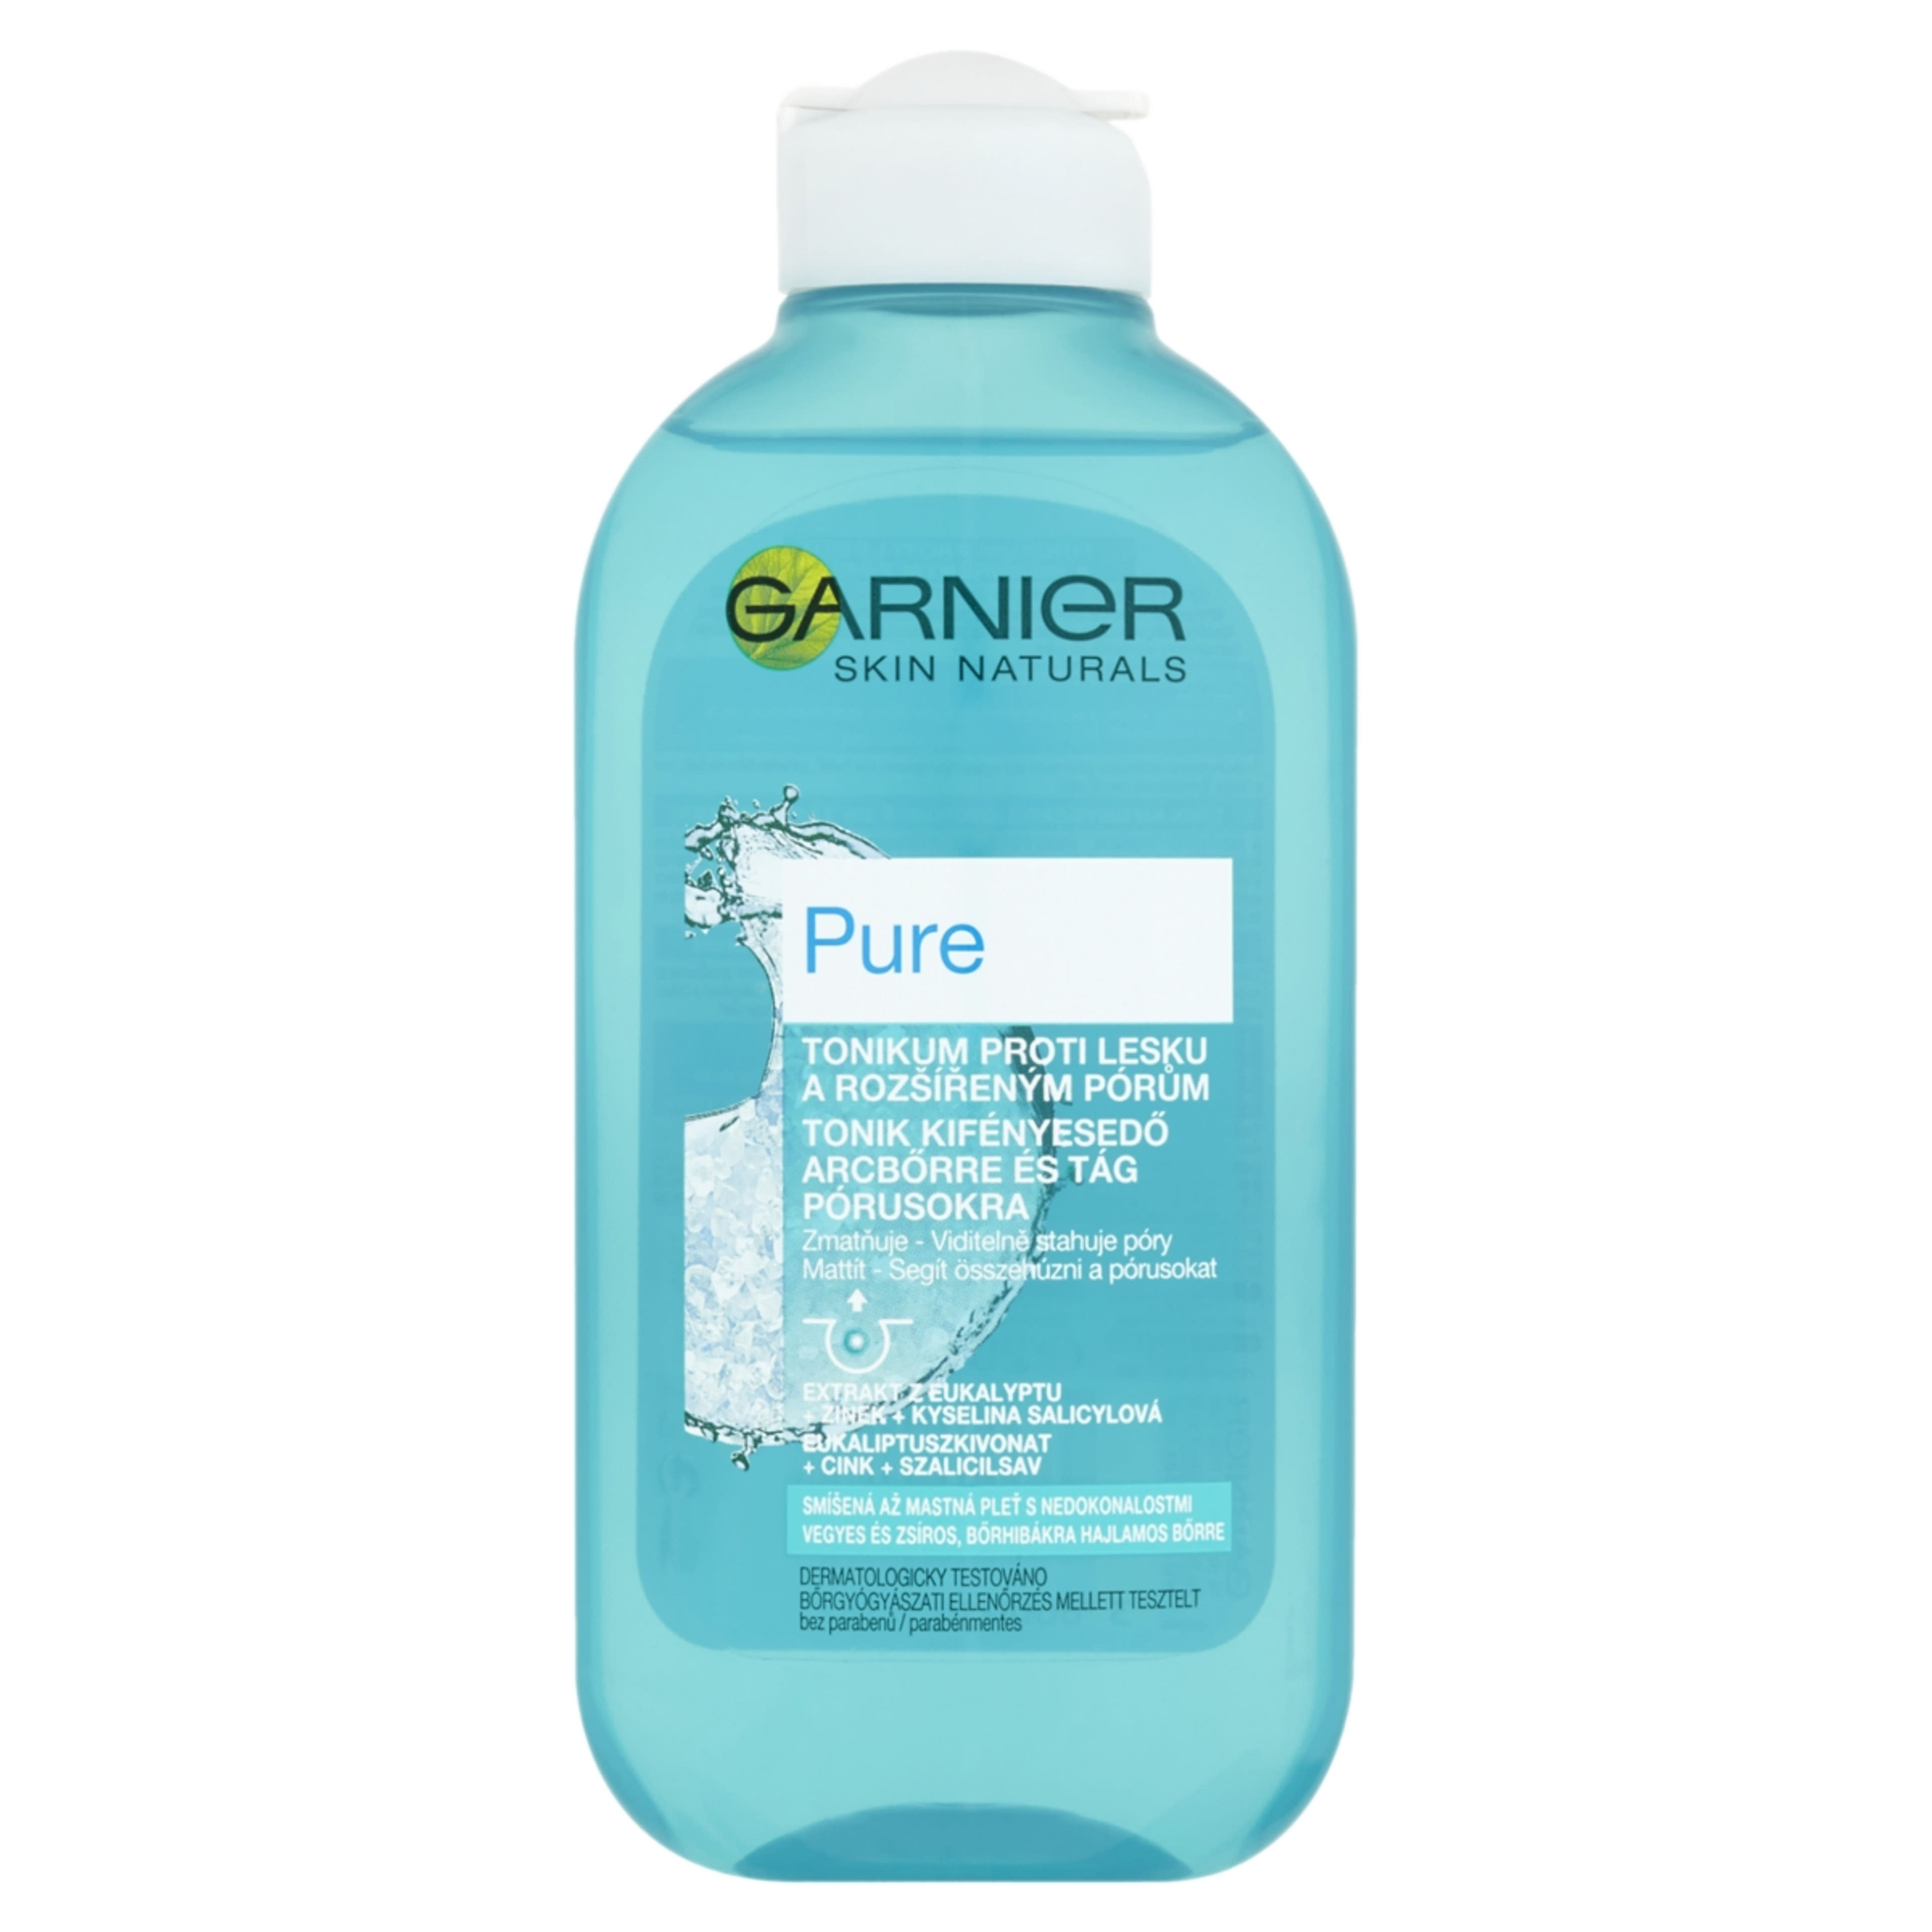 Garnier Skin Naturals Pure Tonik Kifényesedő Arcbőrre És Tágult Pórusokra - 200 ml-1